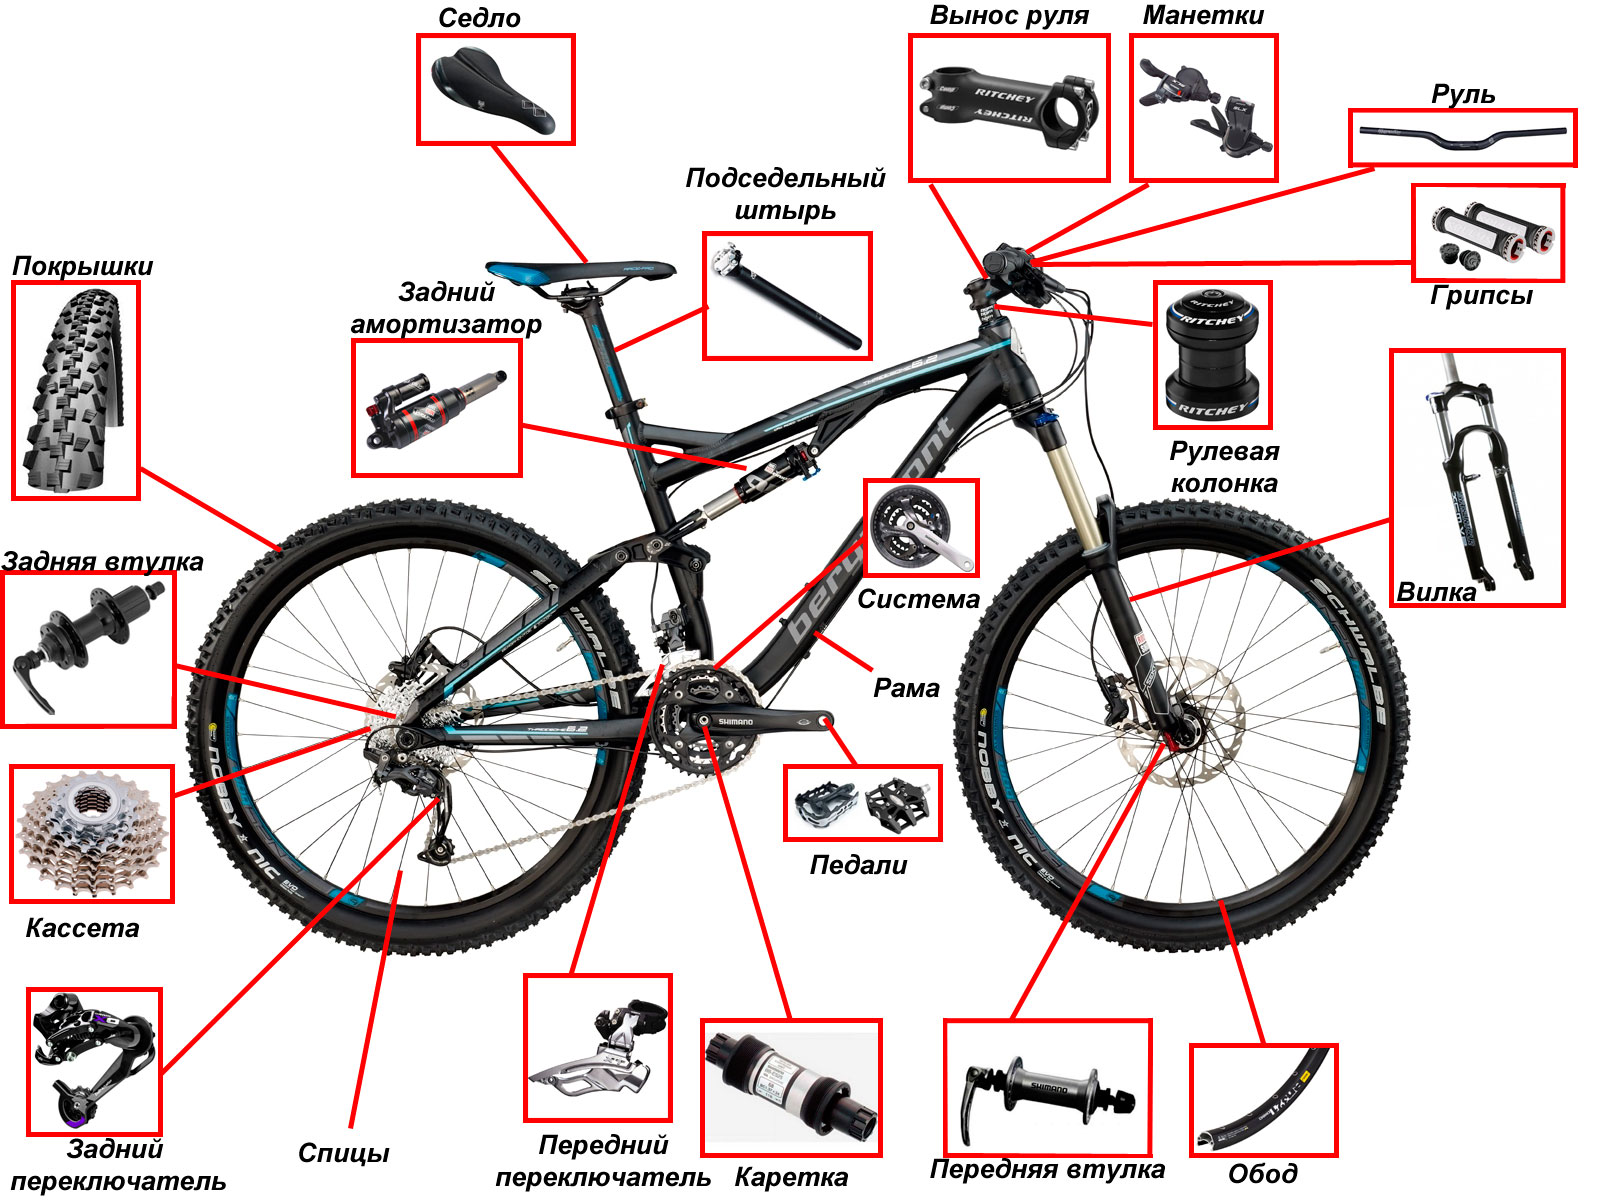 Схема та пристрій велосипеда